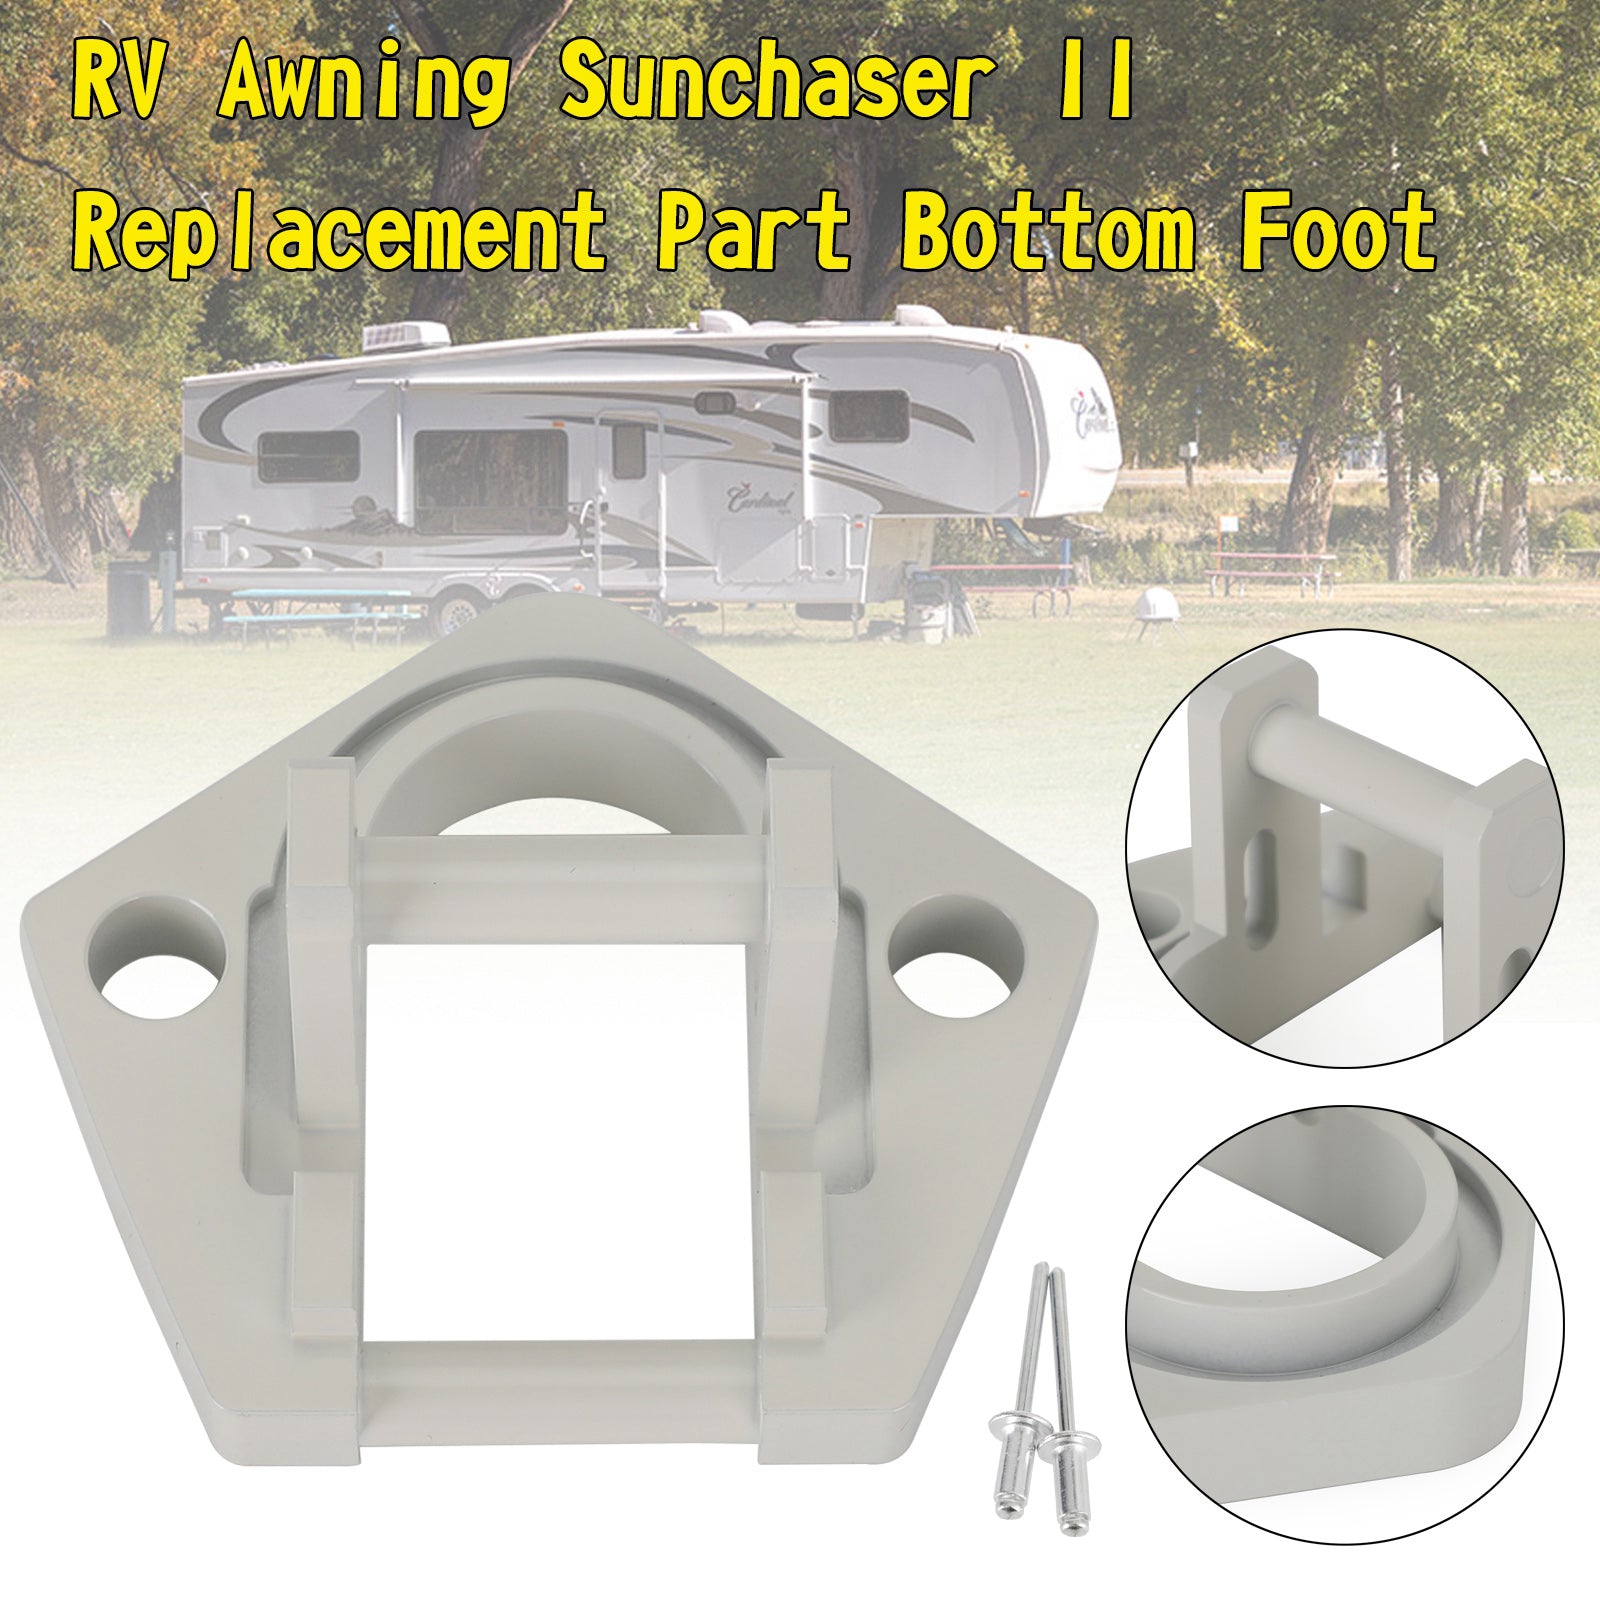 Hardware per tende da sole in alluminio per la sostituzione del movimento centrale della tenda da sole Sunchaser II U